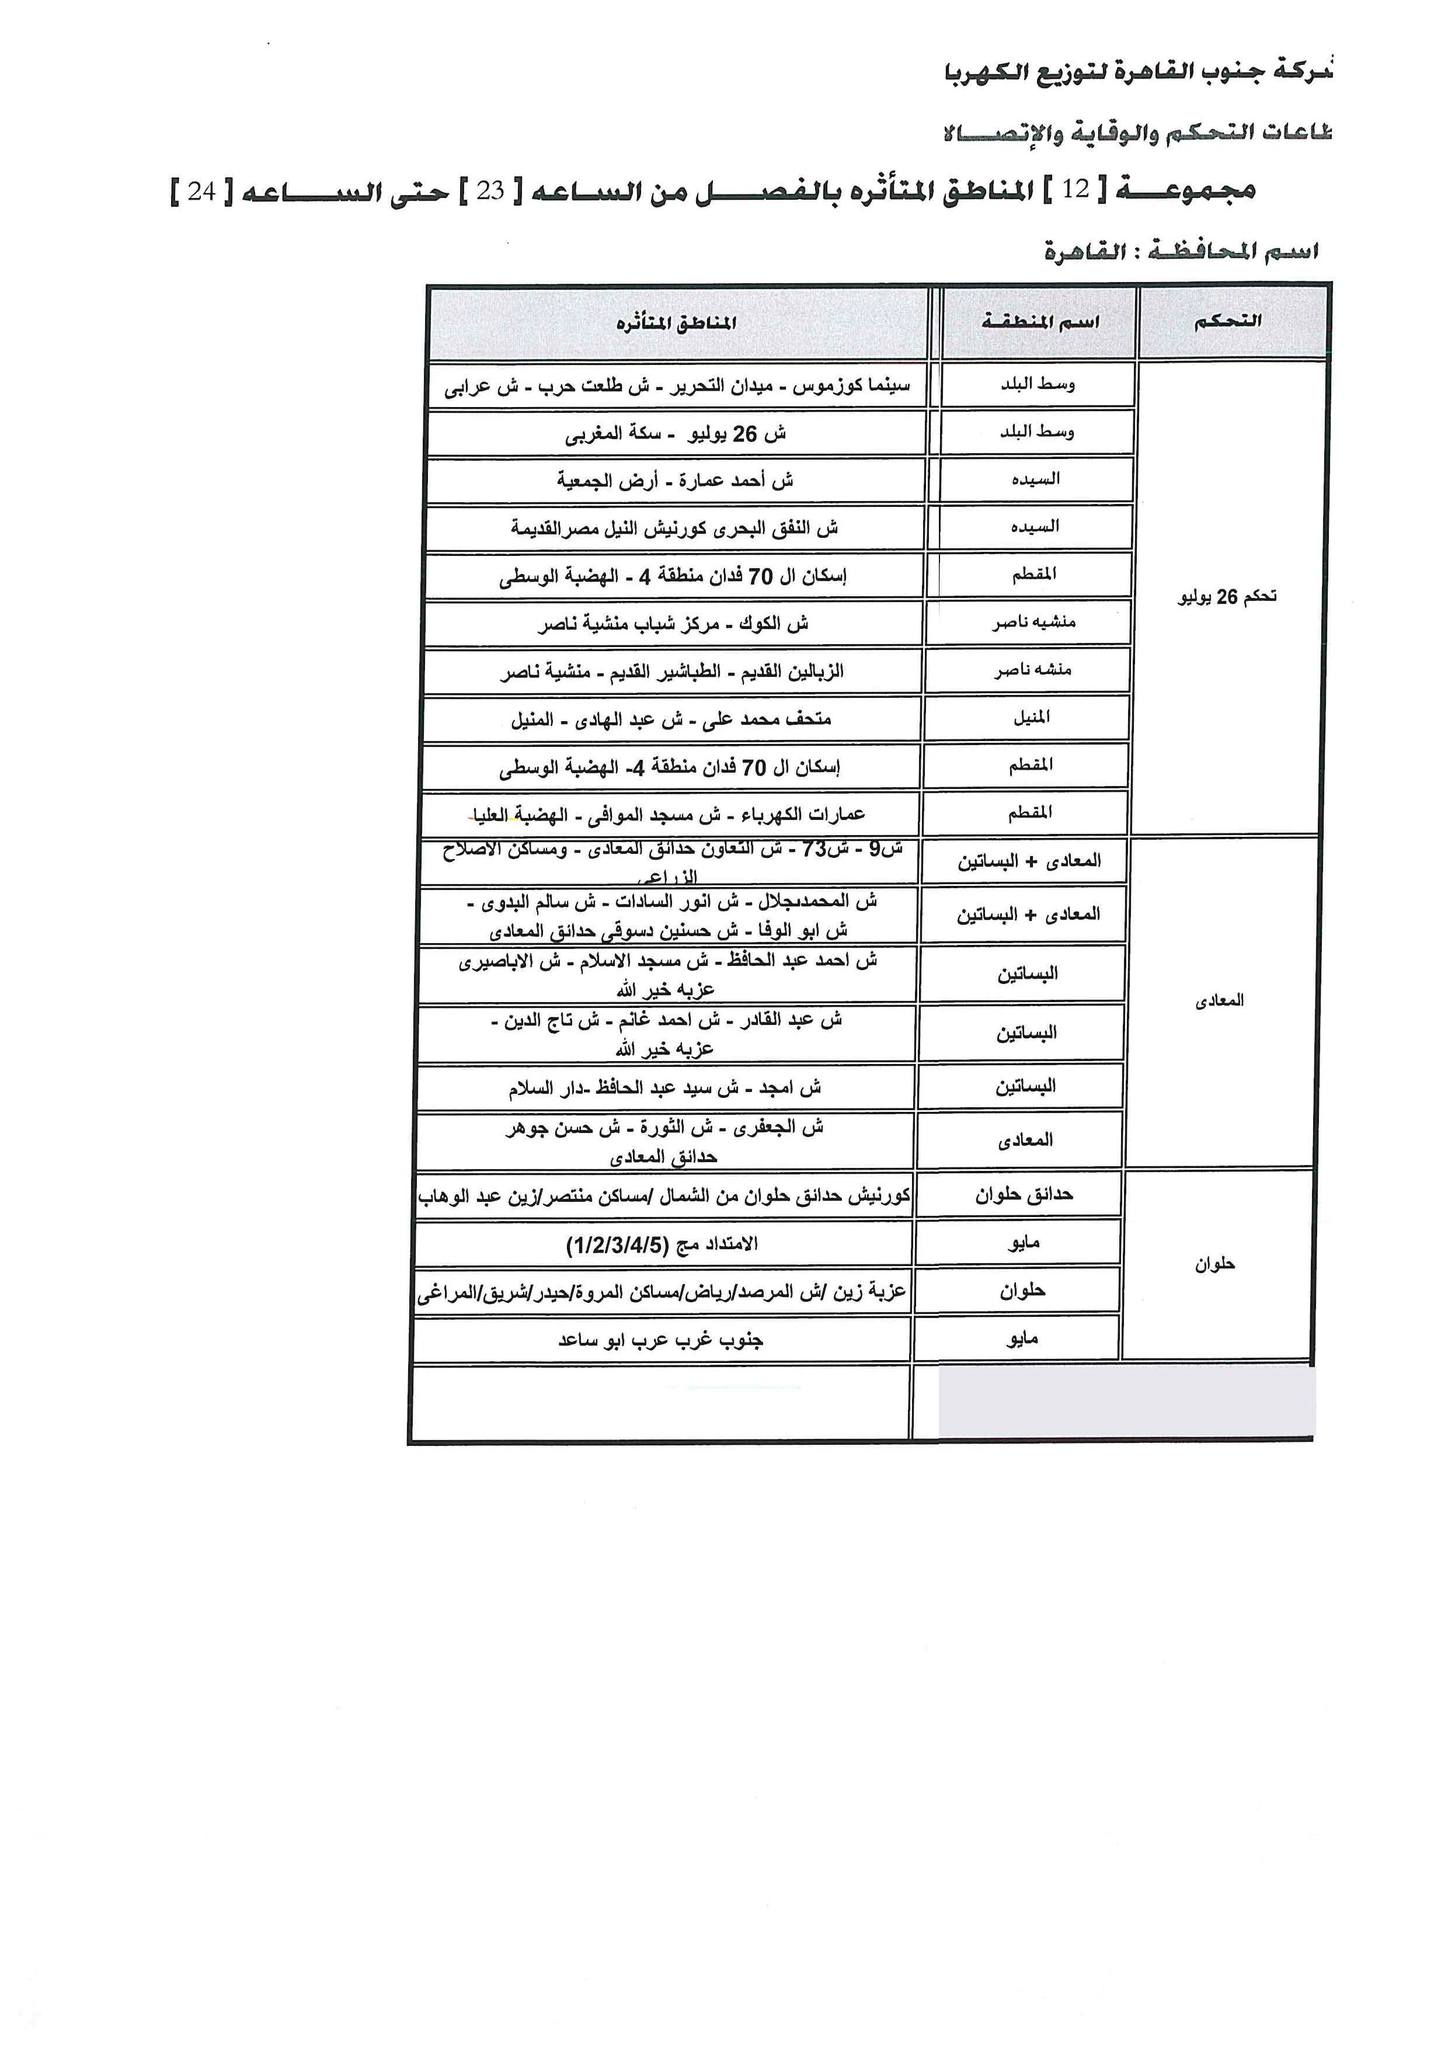 تعرف على جدول قطع الكهرباء في محافظة القاهرة 8